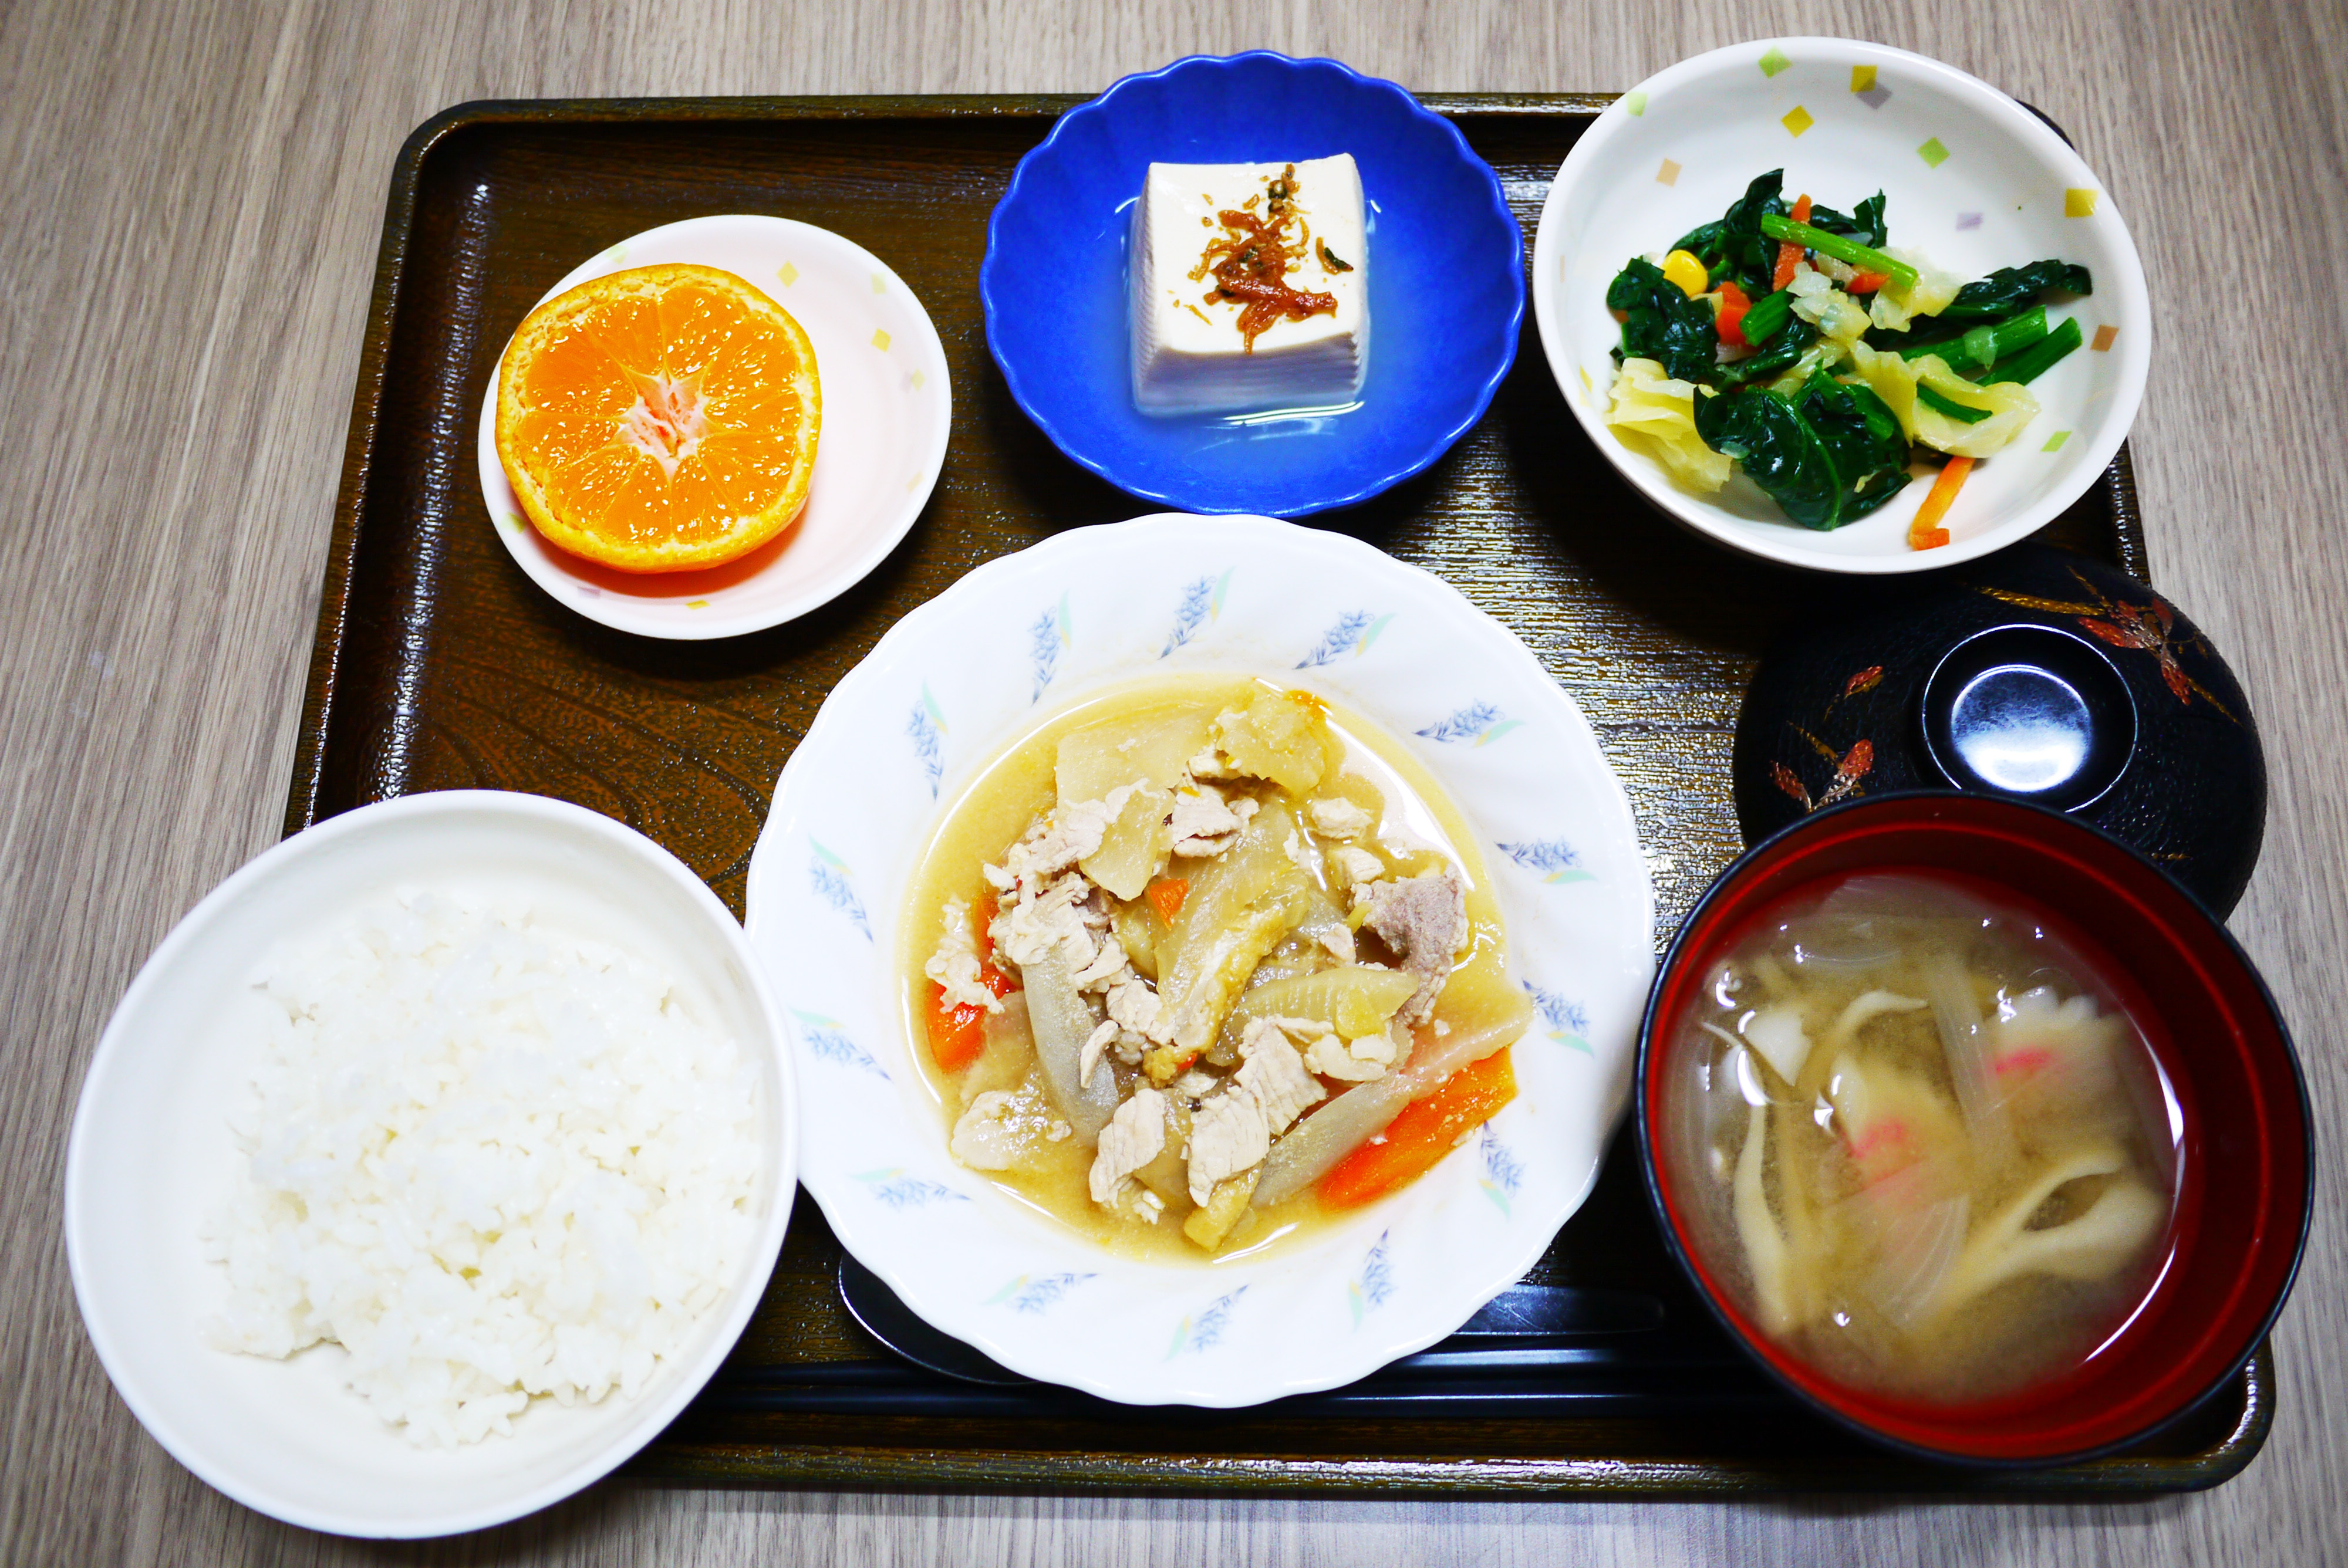 きょうのお昼ごはんは、鶏肉と根菜のみそ煮込み、和え物、煮奴、みそ汁、果物でした。